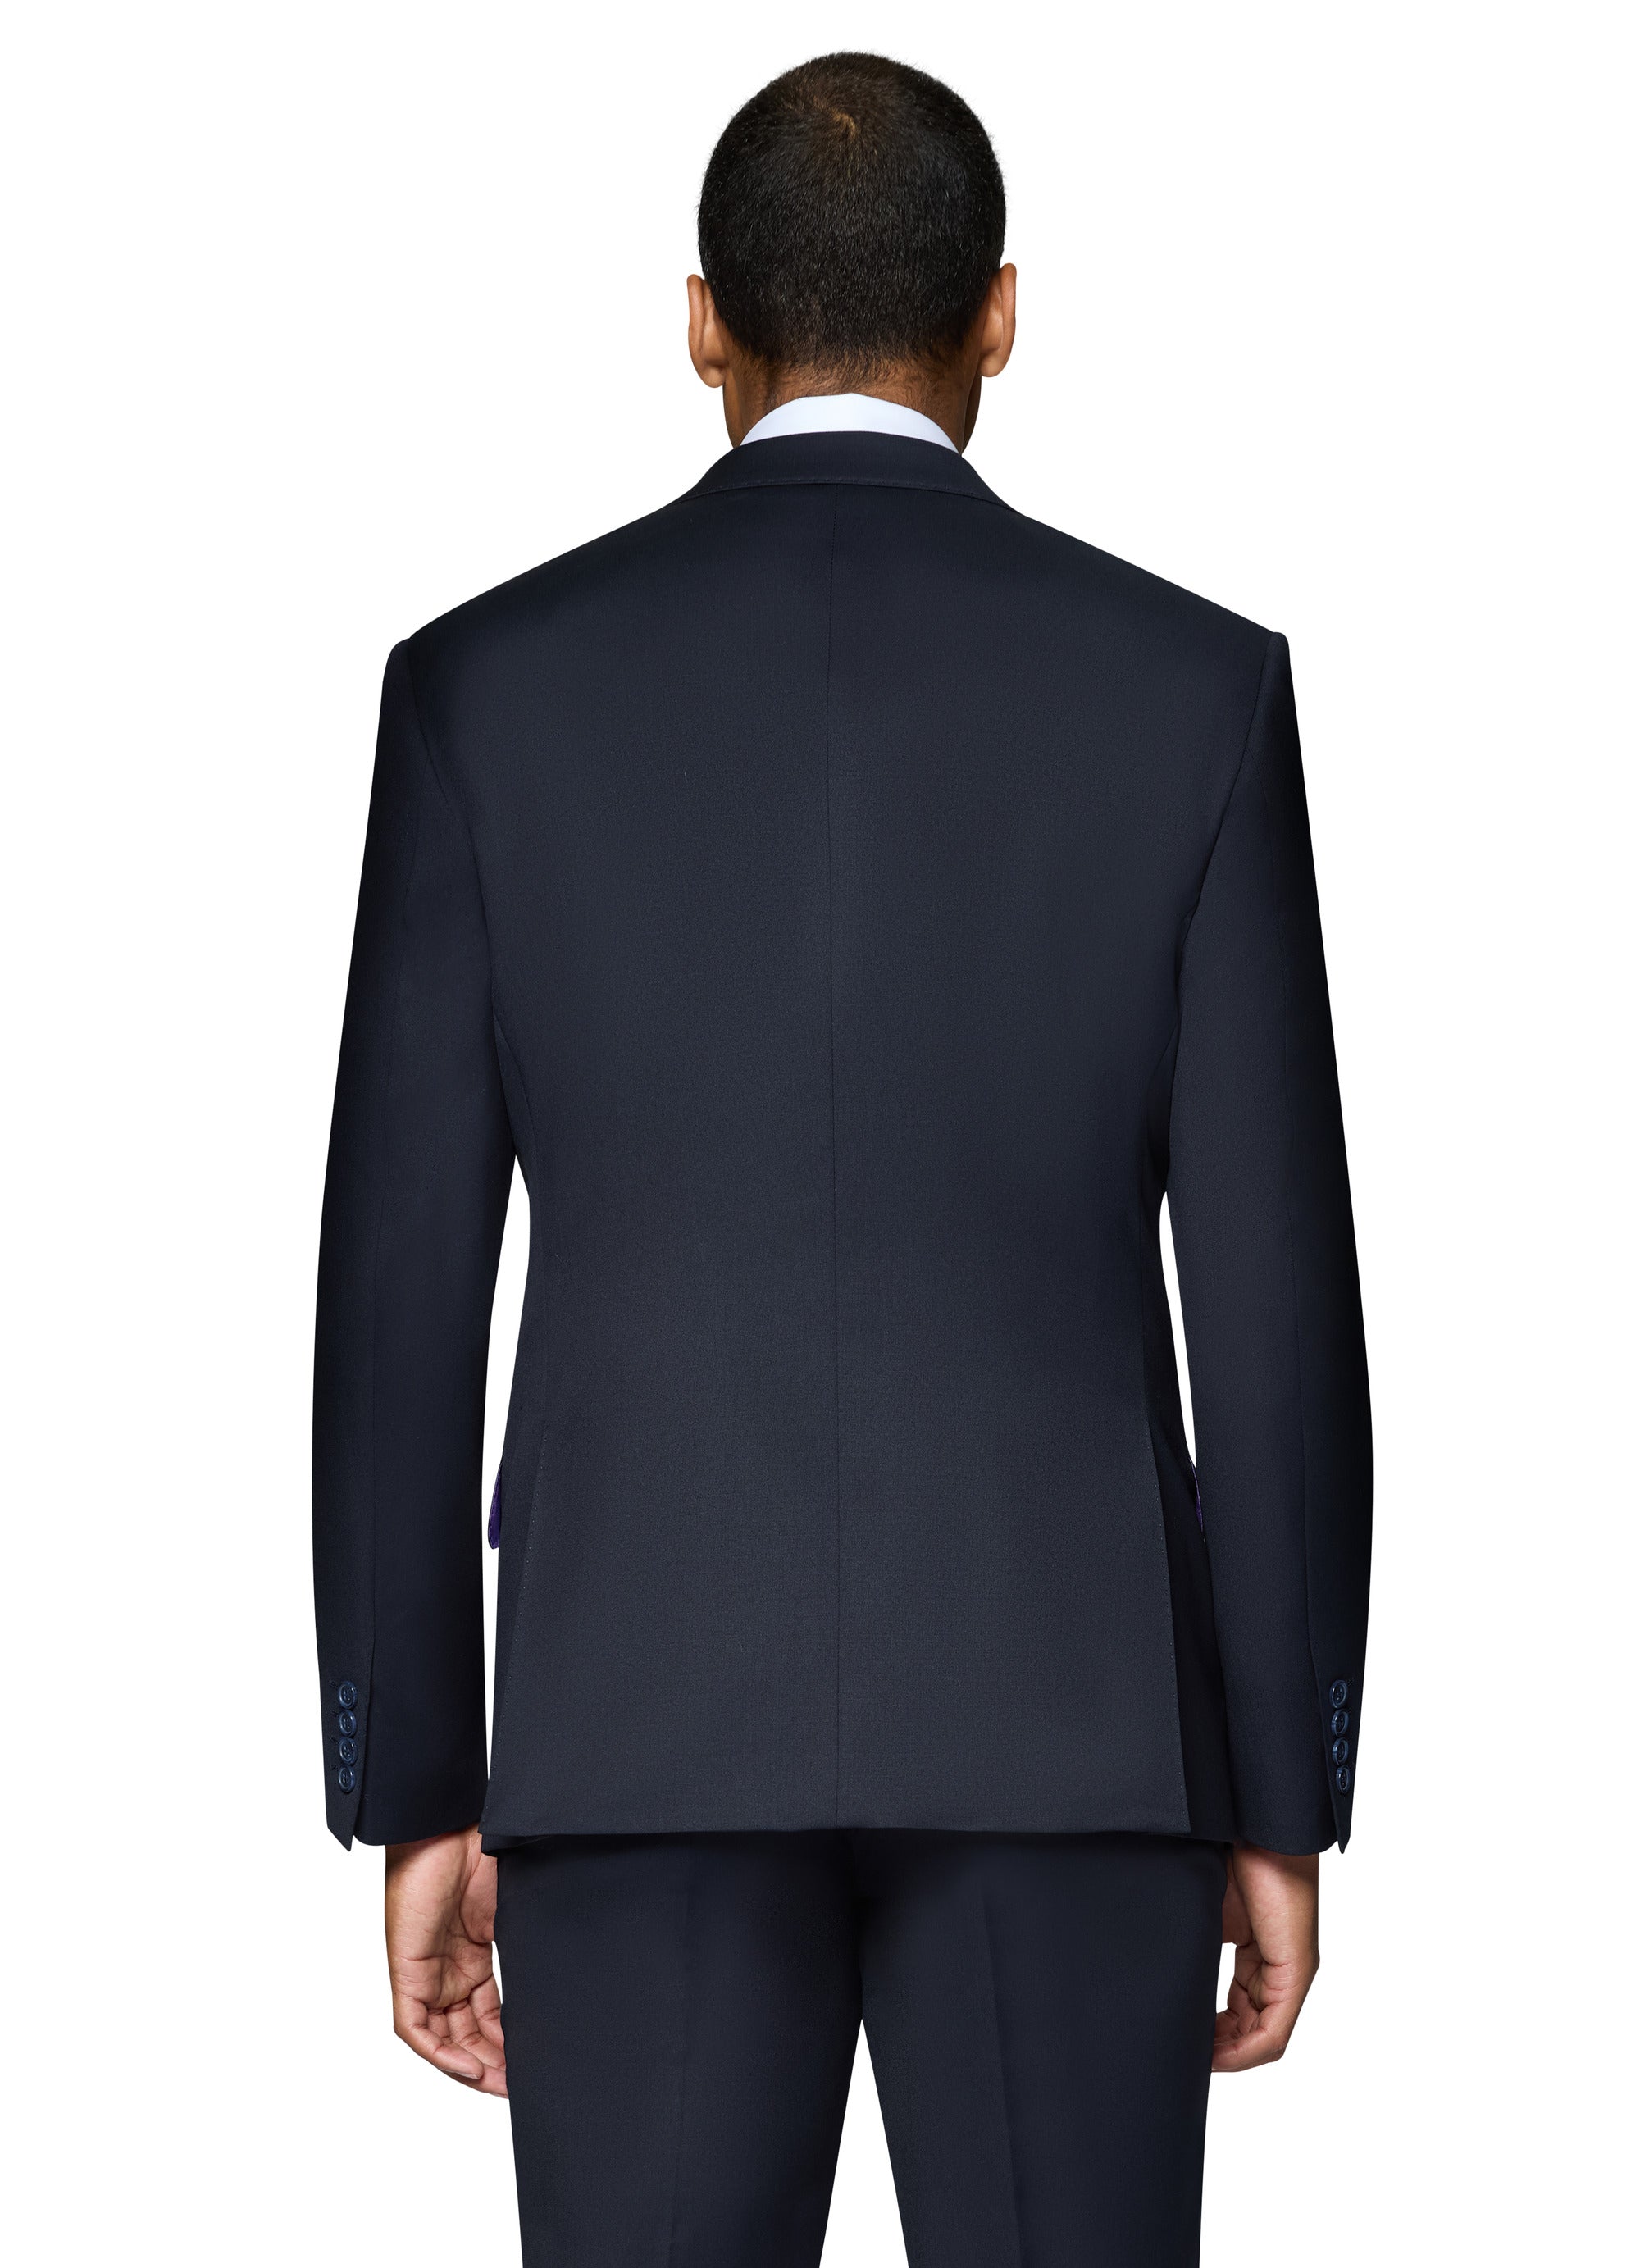 Berragamo - Reda | Slim 2-Piece Notch Solid Navy Suit